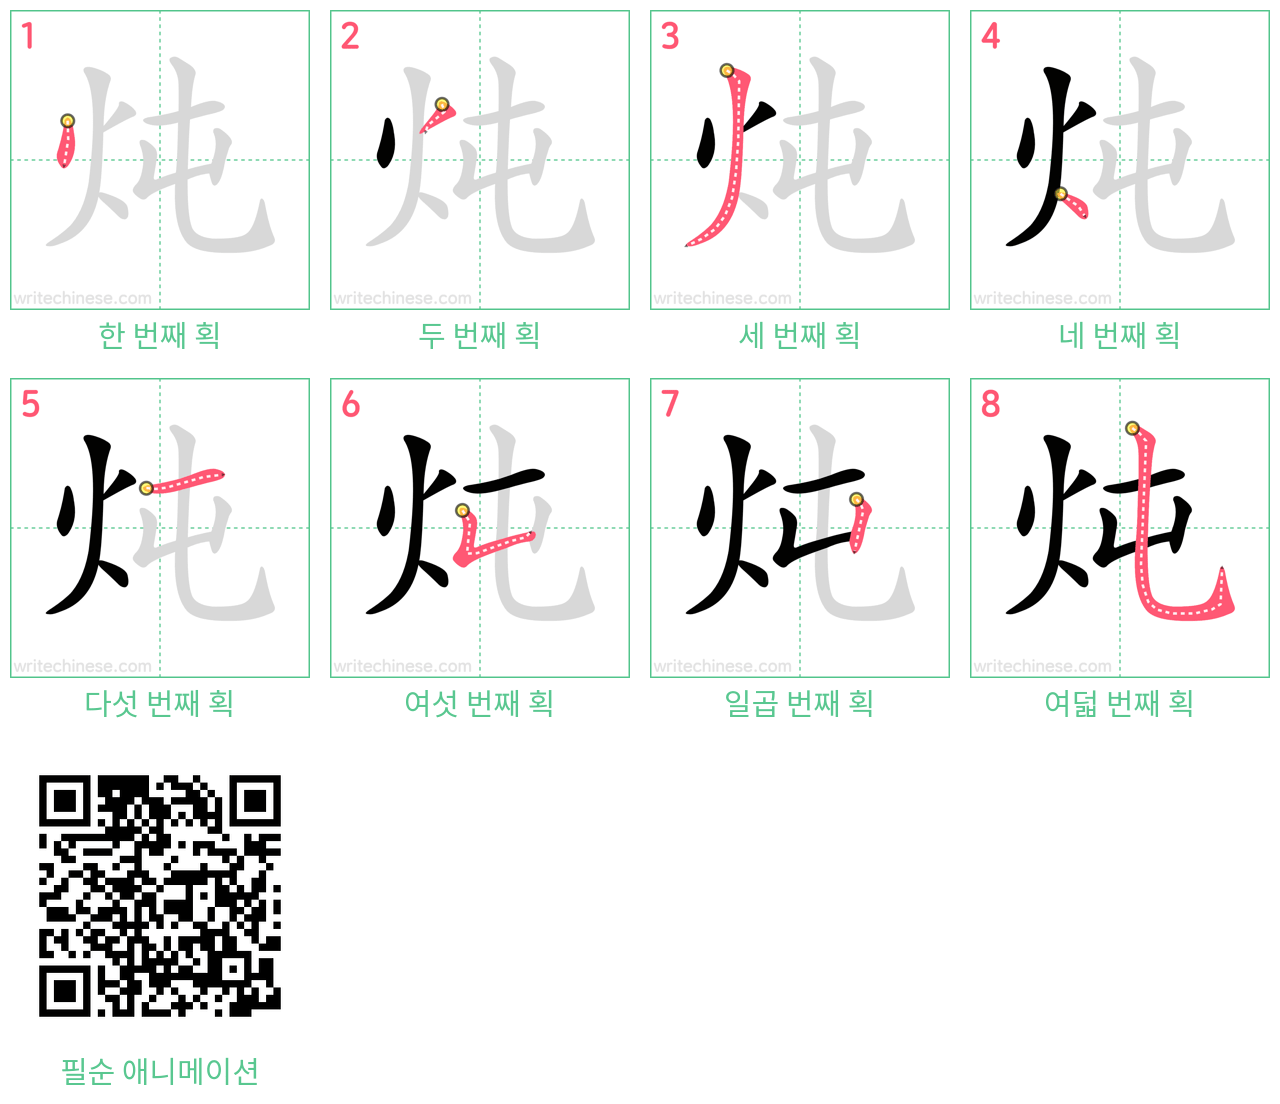 炖 step-by-step stroke order diagrams